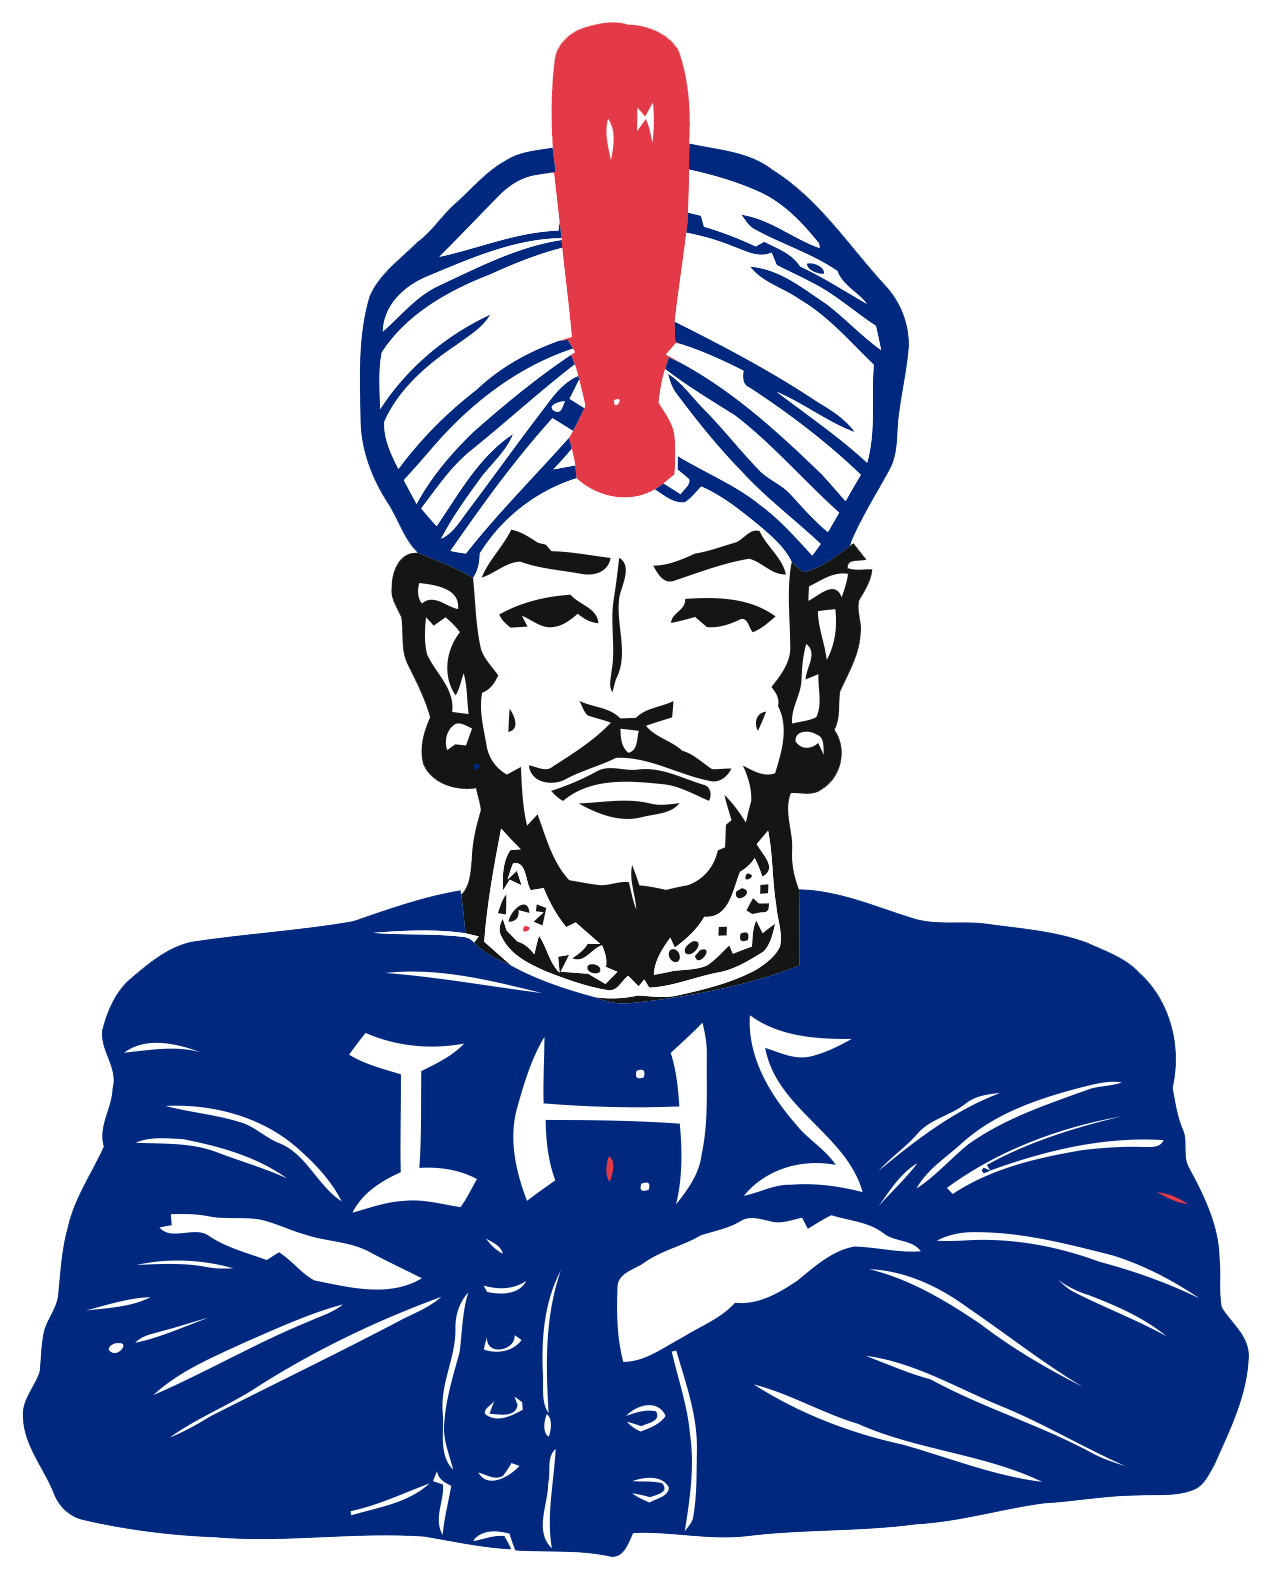 Indio Rajahs - Indio High School Logo (1311x1627)